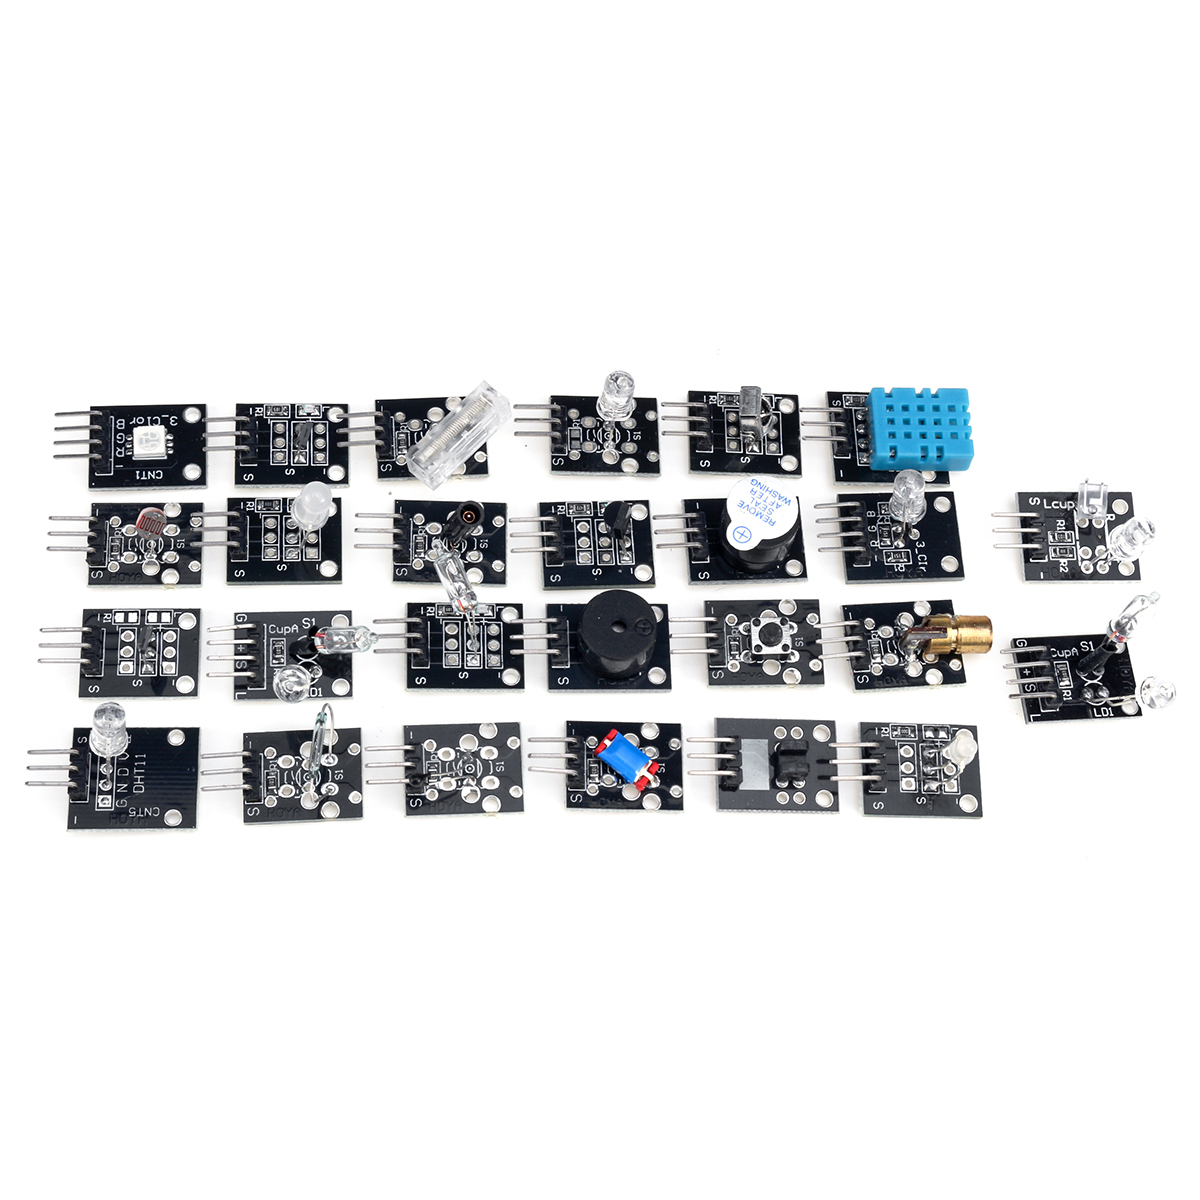 45-IN-137-IN-1-Sensor-Module-Starter-Kits-Set-For-Arduino-Raspberry-Pi-Education-Bag-Package-1619901-6